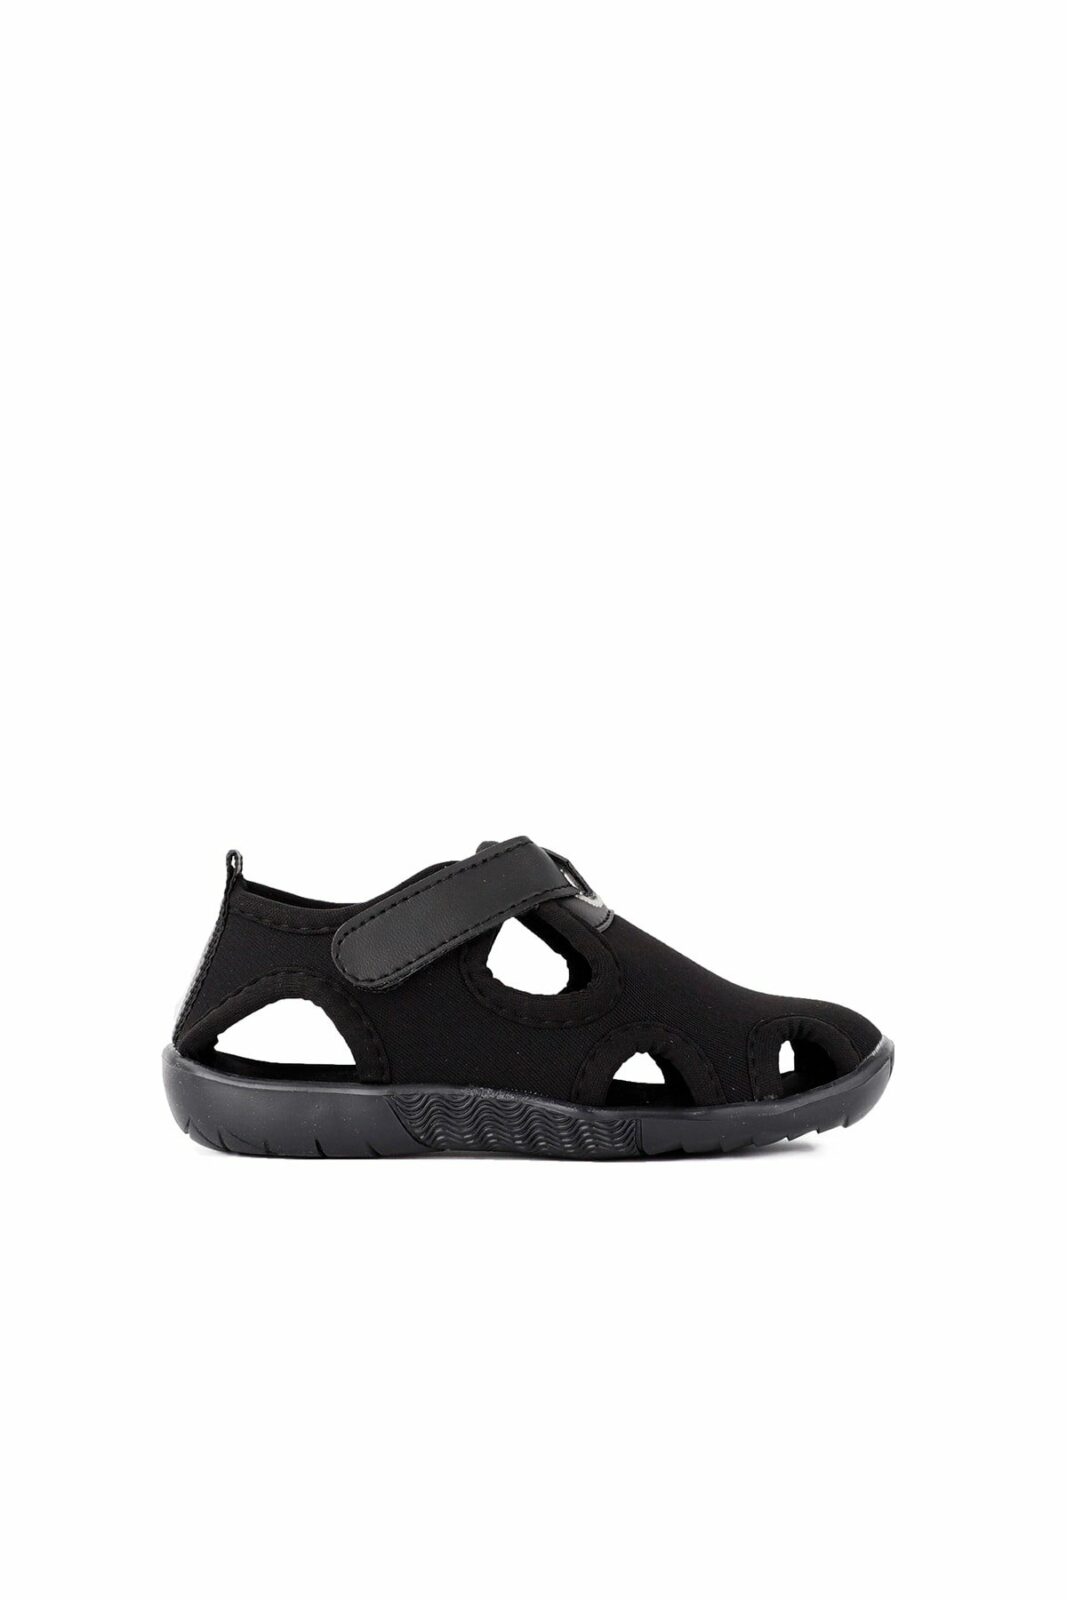 Slazenger Sandals - Black